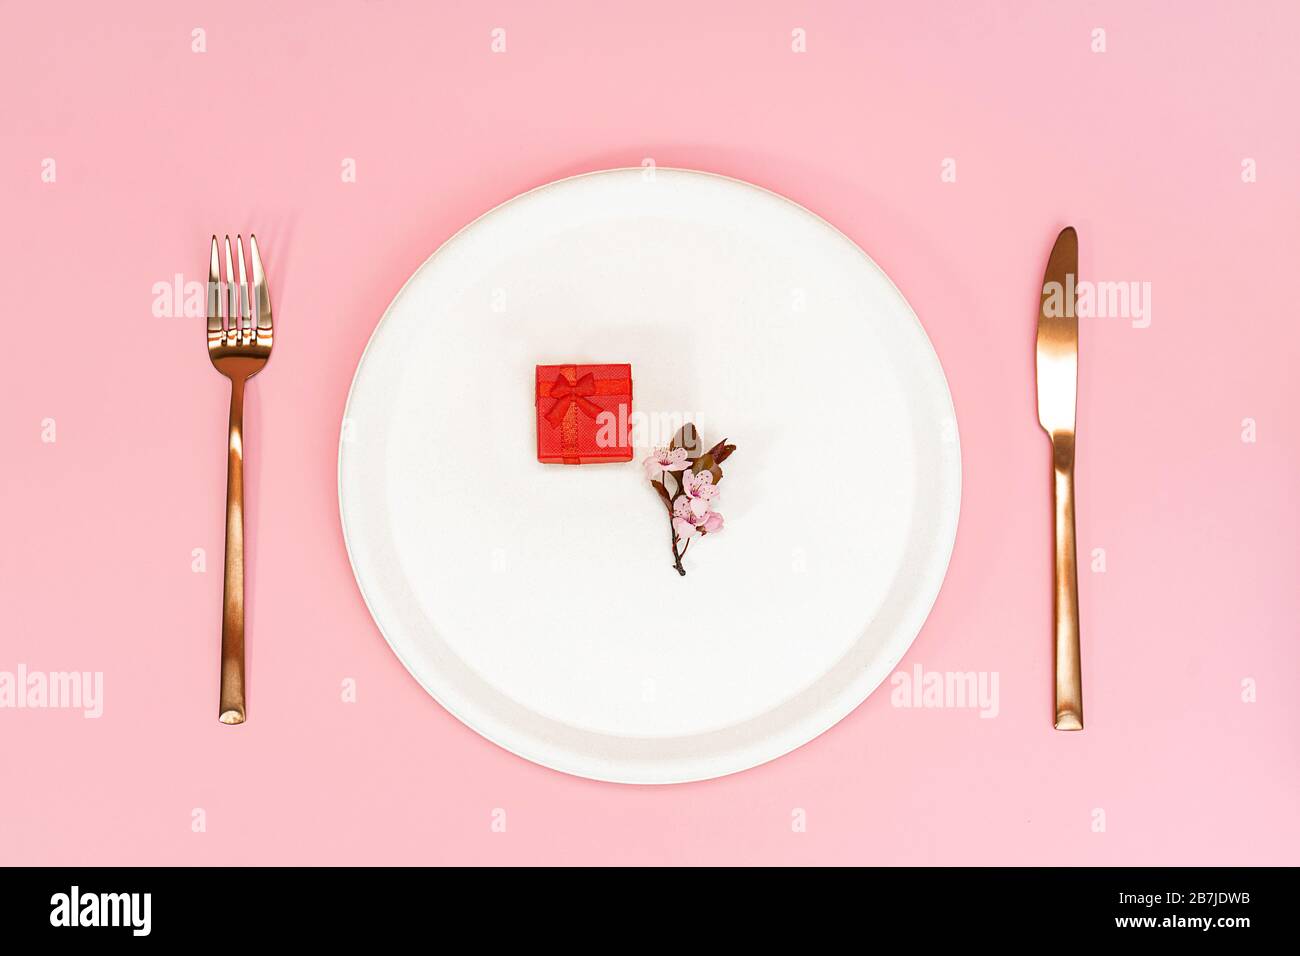 Frühlingskirschblüte und roter Geschenkkasten auf cremefarbendem Teller, Messer und Gabel. Auf pinkfarbenem Hintergrund. Flaches Layout, Kopierbereich. Kirschblüte. Stockfoto